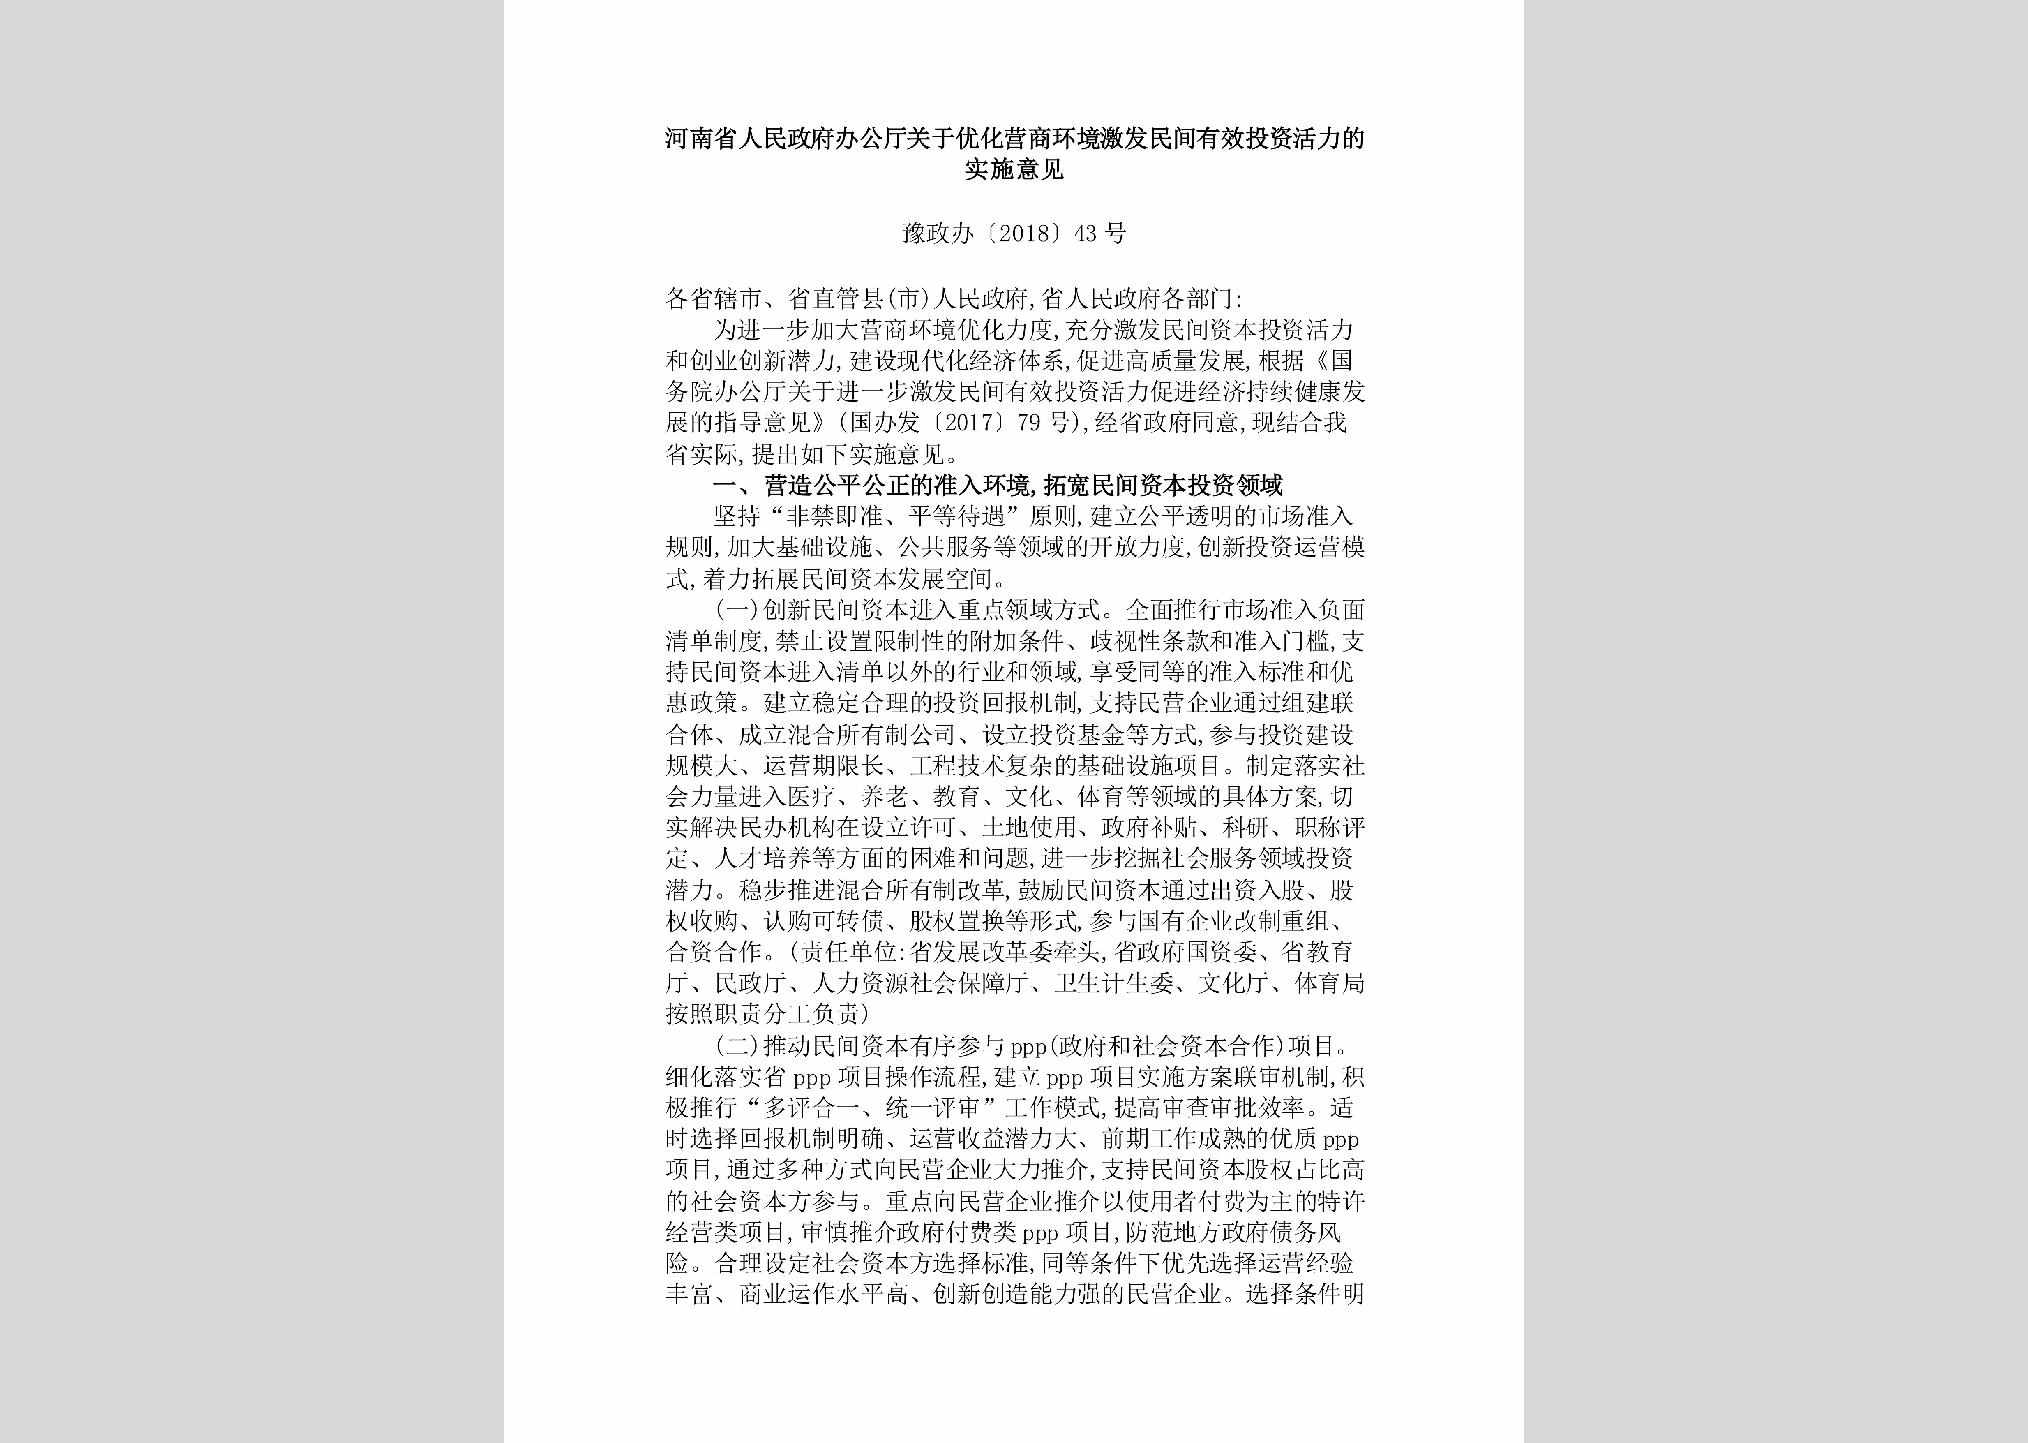 豫政办[2018]43号：河南省人民政府办公厅关于优化营商环境激发民间有效投资活力的实施意见